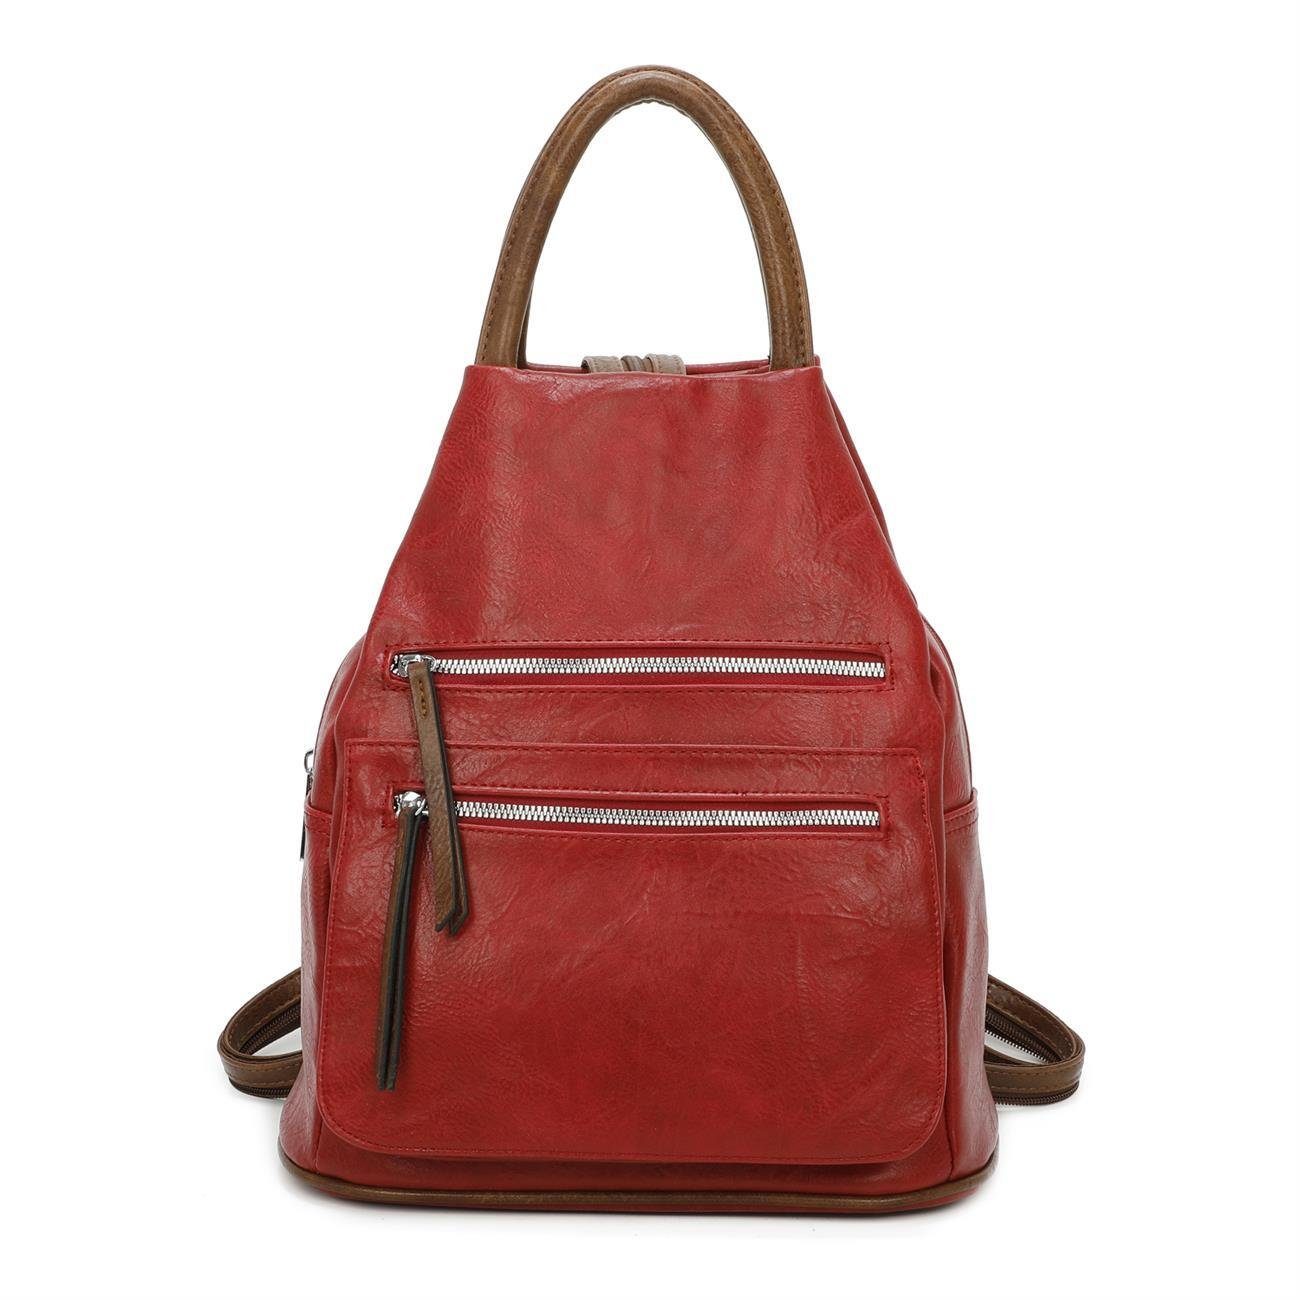 ITALYSHOP24 Rucksack Damen Freizeitrucksack Tasche Umhängetasche, CityRucksack Handtasche Backpack Tagesrucksack Daypack Rot